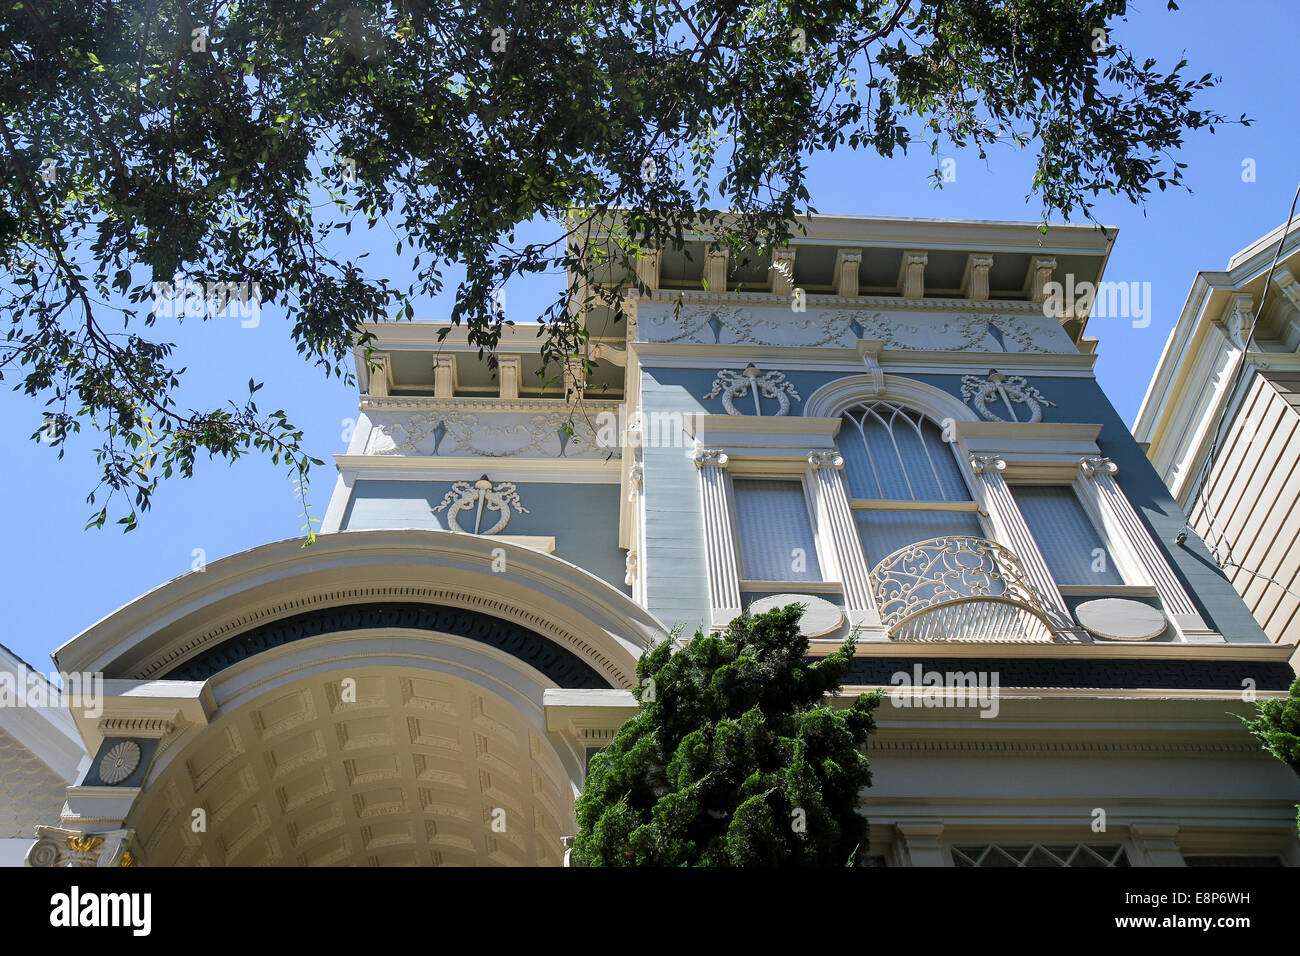 Détail d'une maison victorienne au Lower Pacific Heights, San Francisco, Californie, Etats-Unis, Amérique du Nord Banque D'Images